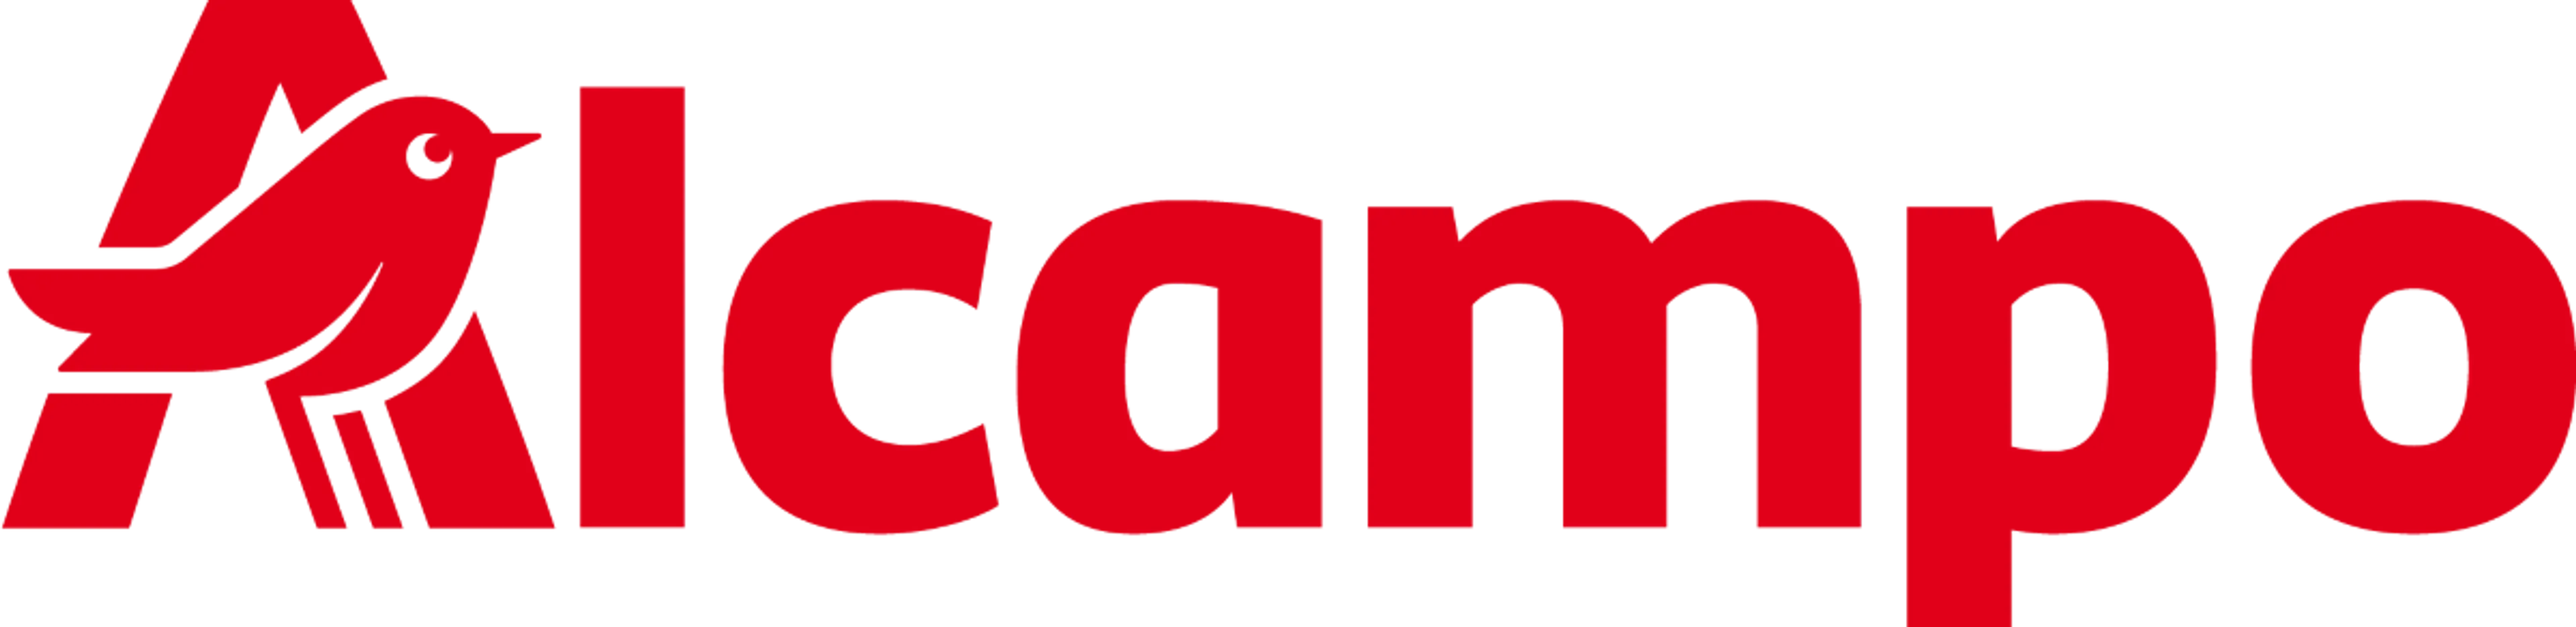 ALCAMPO logo